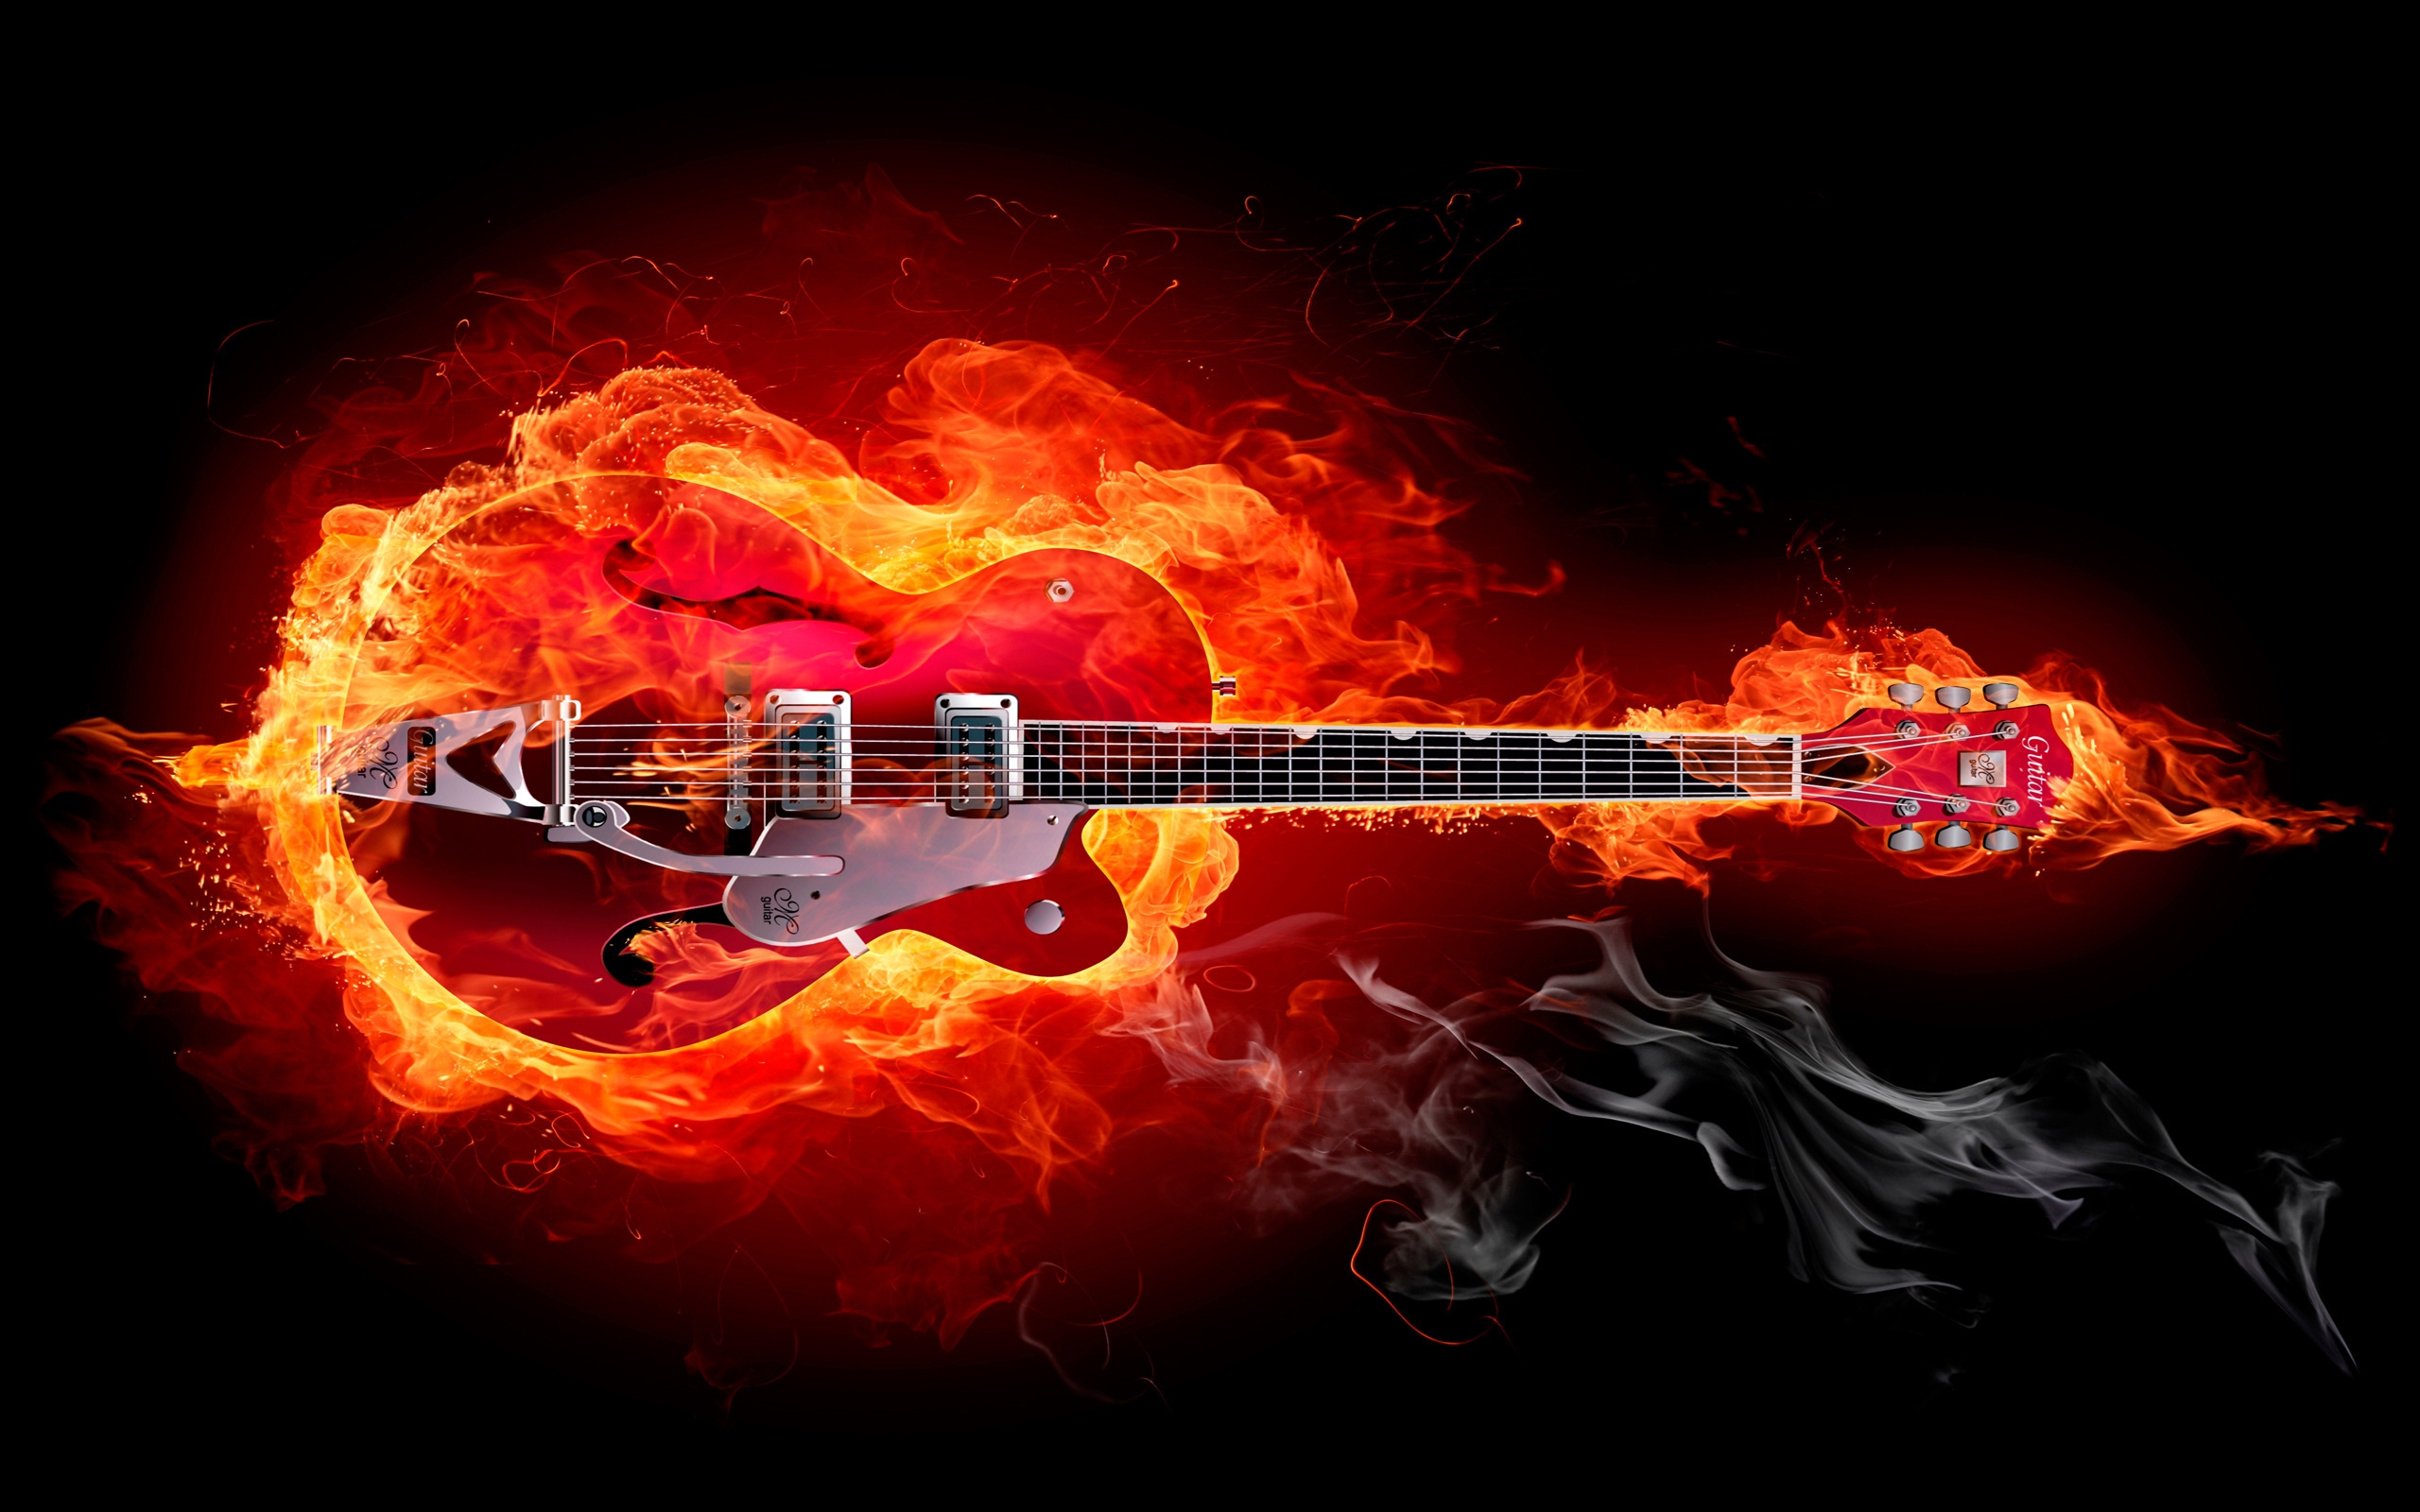 Fire Guitar for 2560 x 1600 widescreen resolution